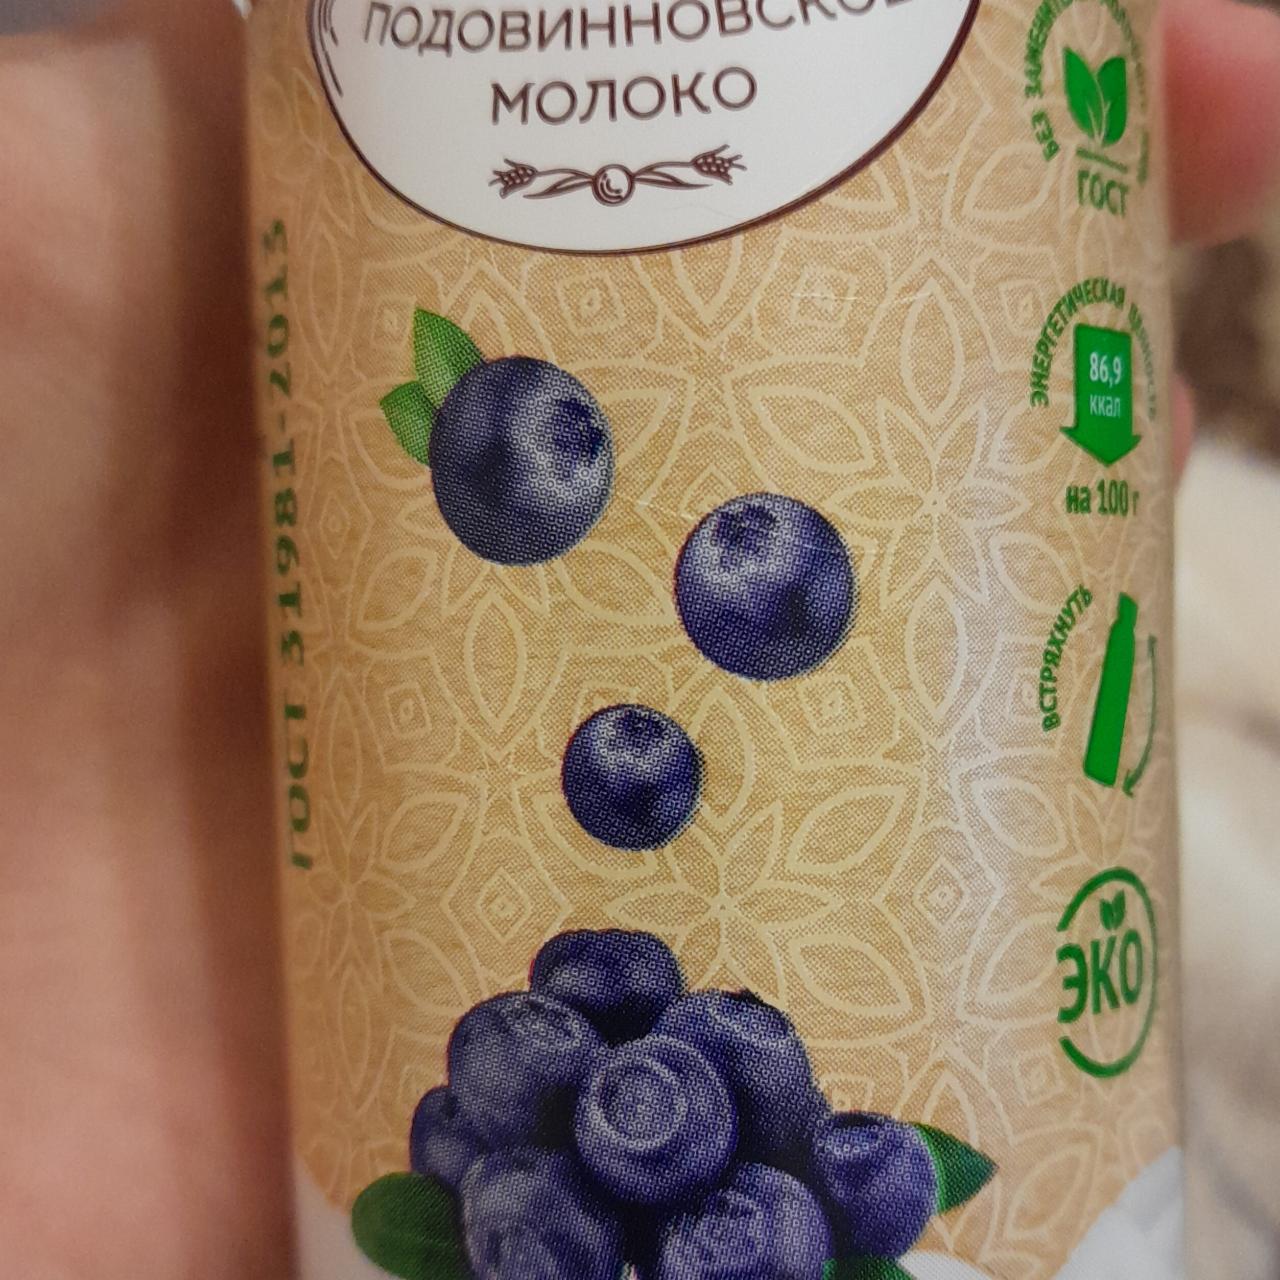 Фото - Йогурт черника питьевой Подовинновское молоко